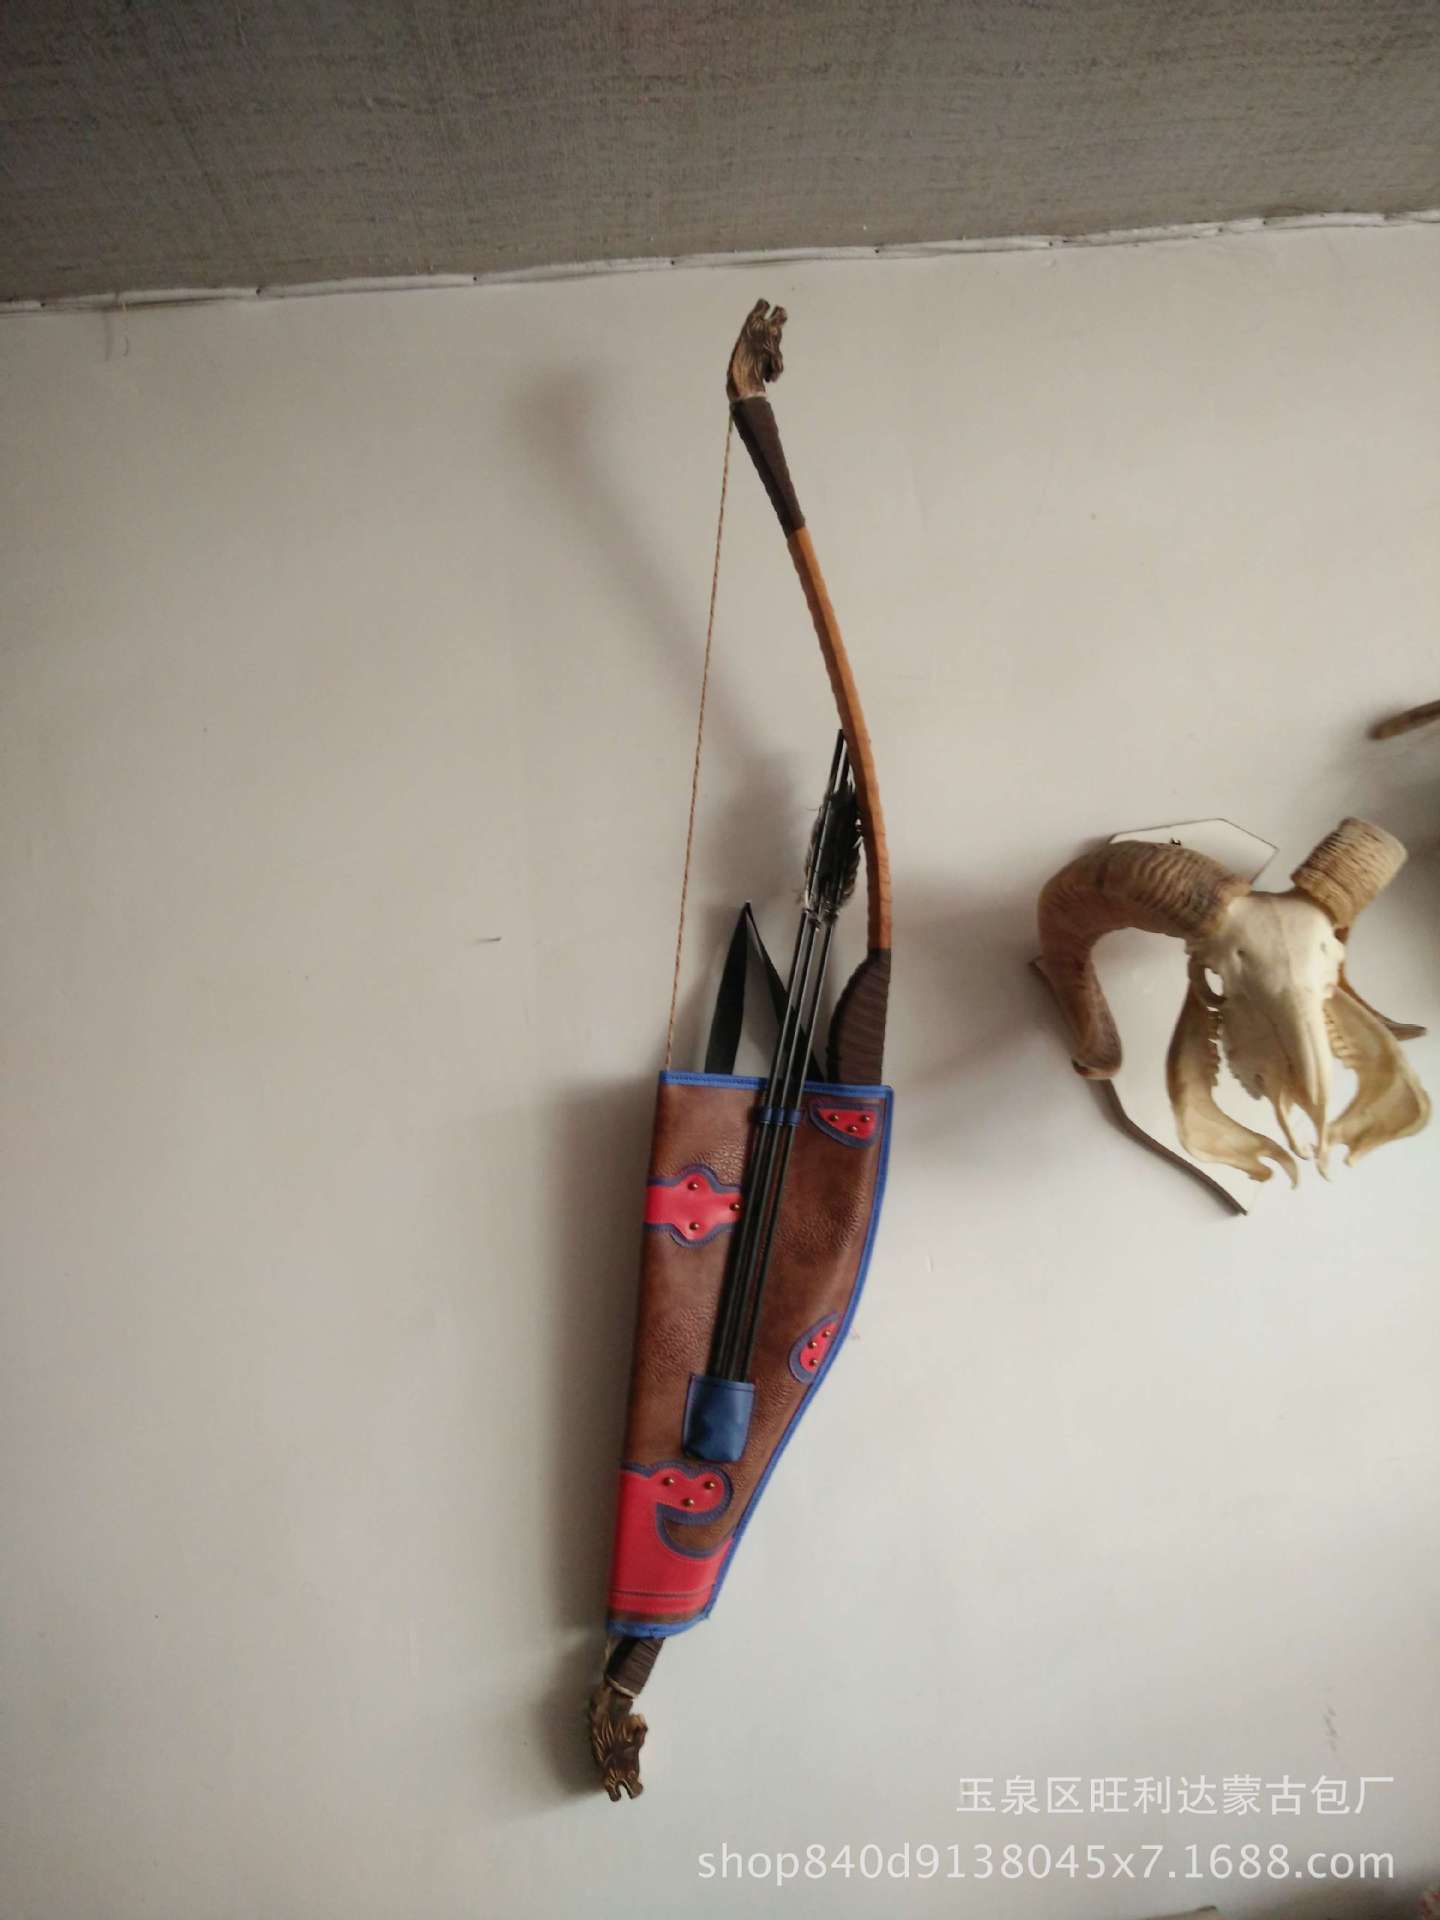 蒙古骑马射箭,弓箭样品装饰品,长1.27米 宽0.23米